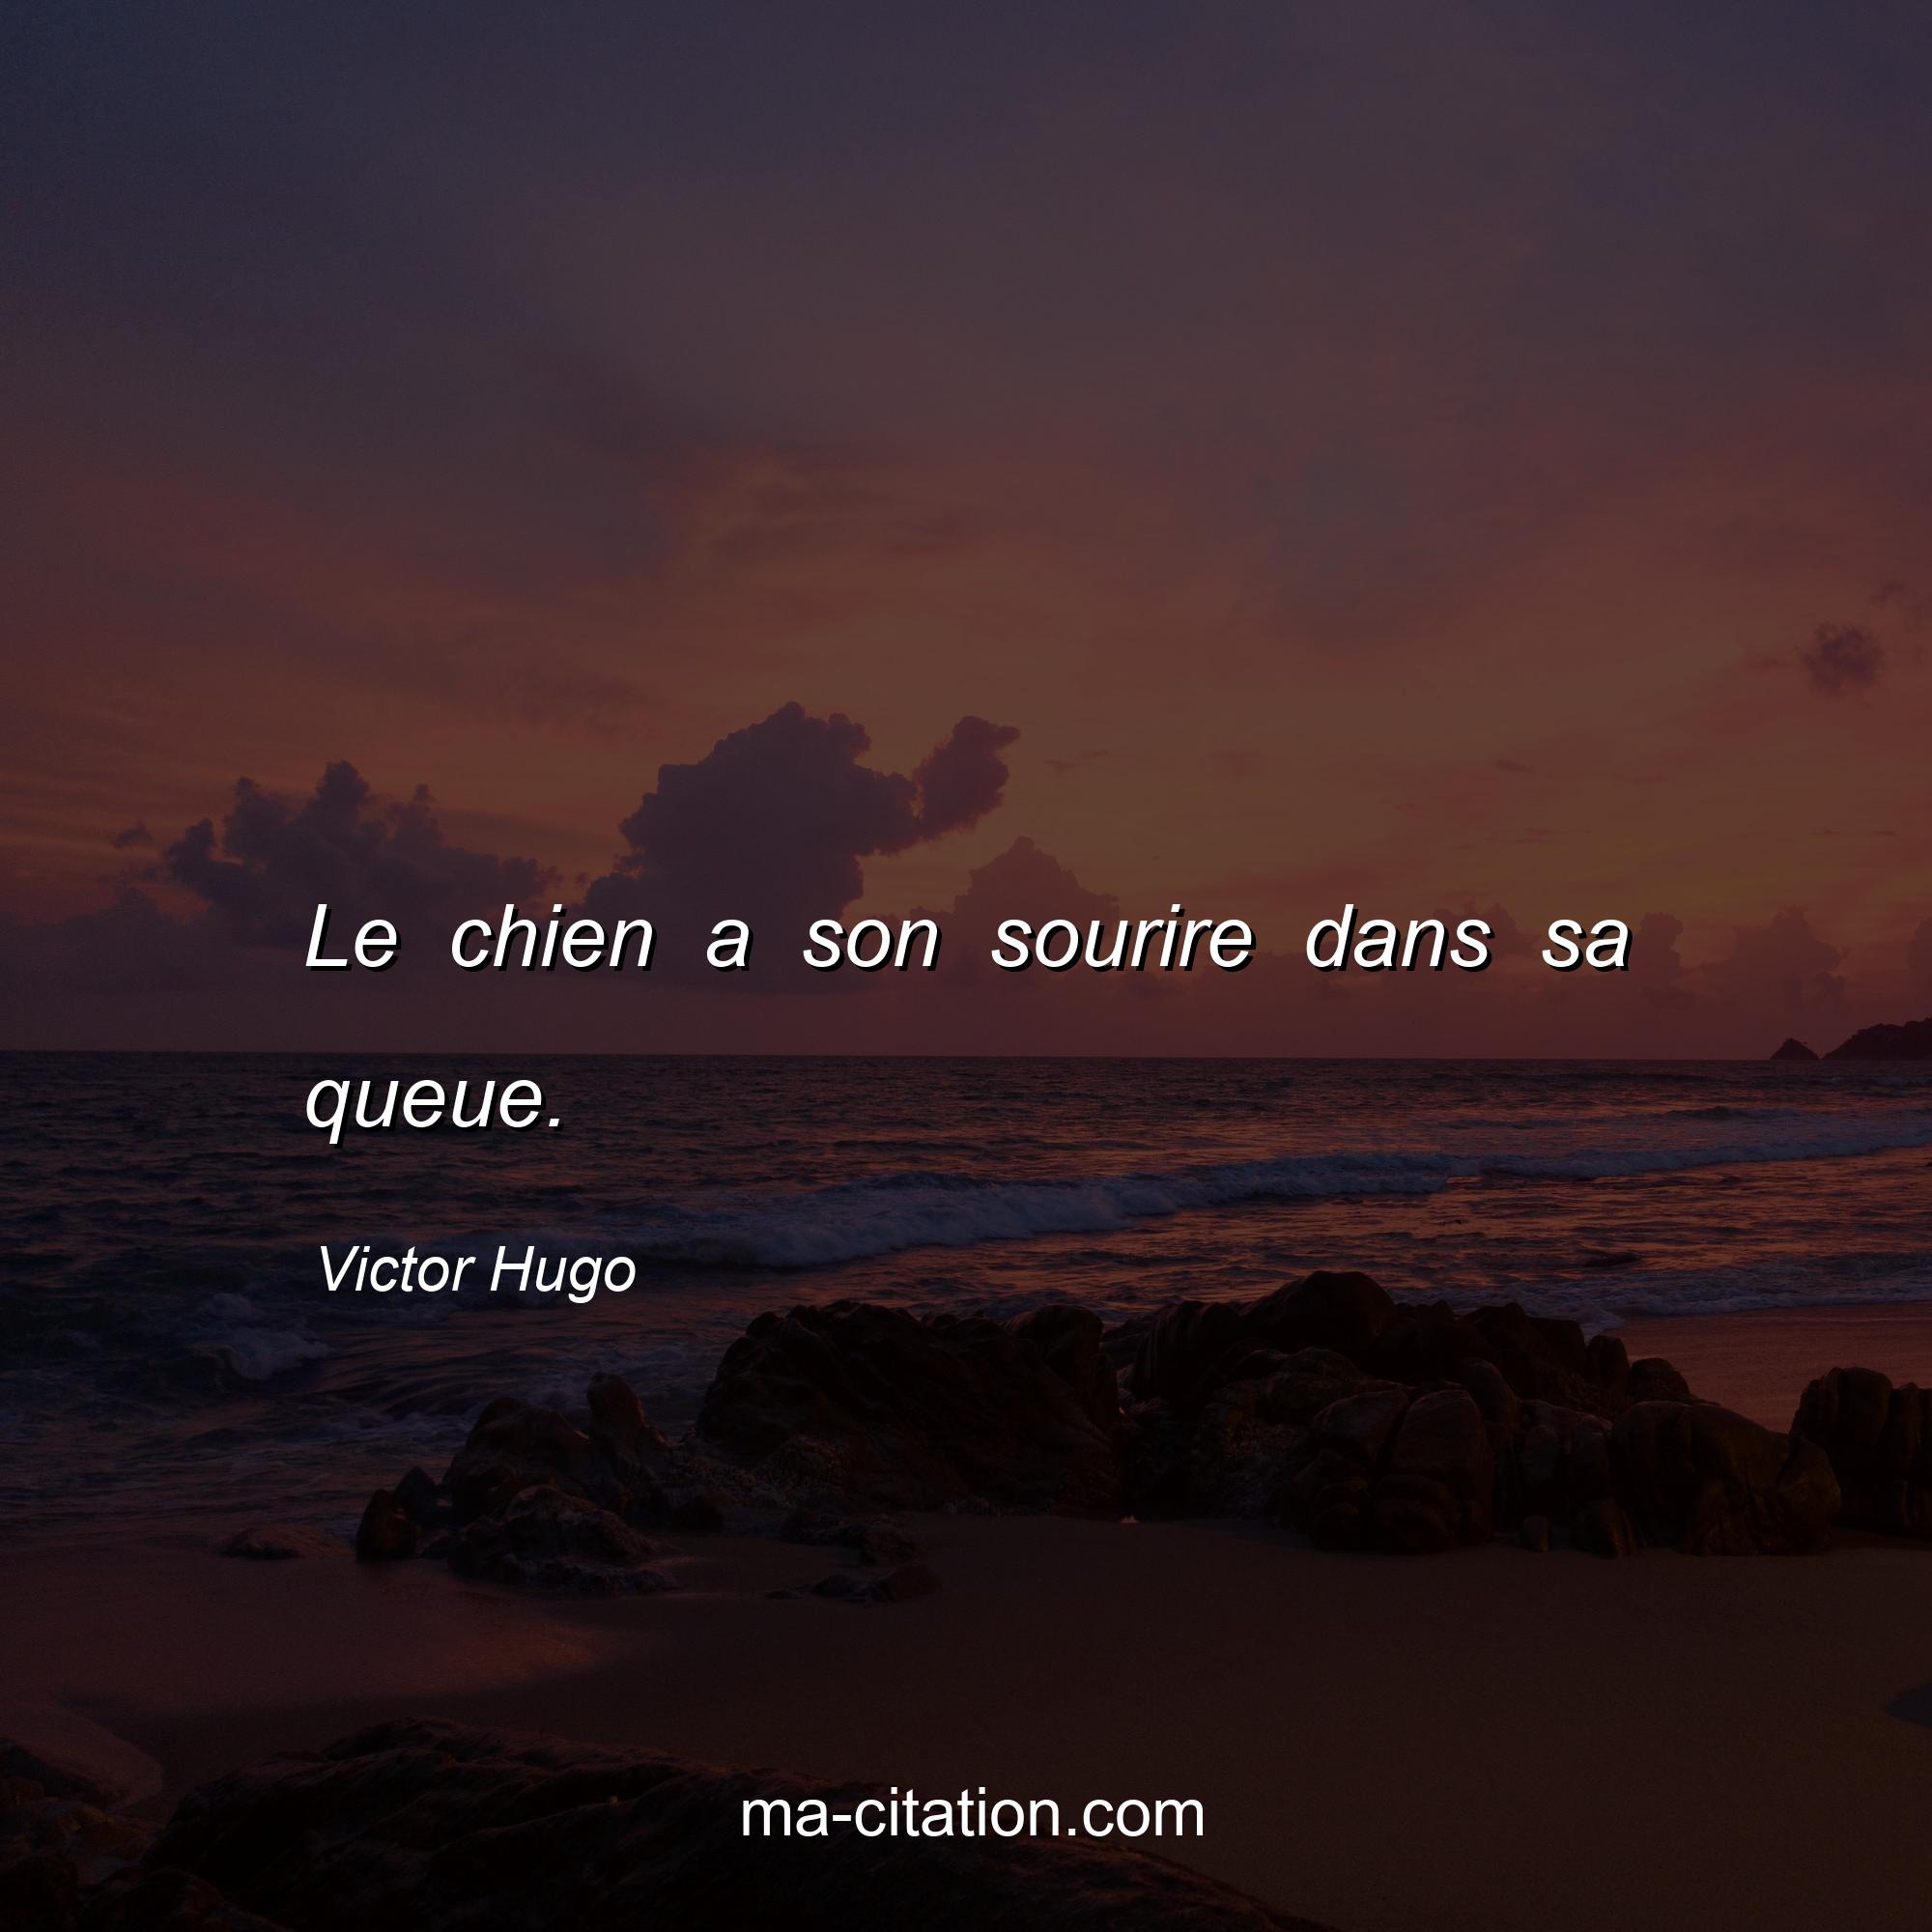 Victor Hugo : Le chien a son sourire dans sa queue.